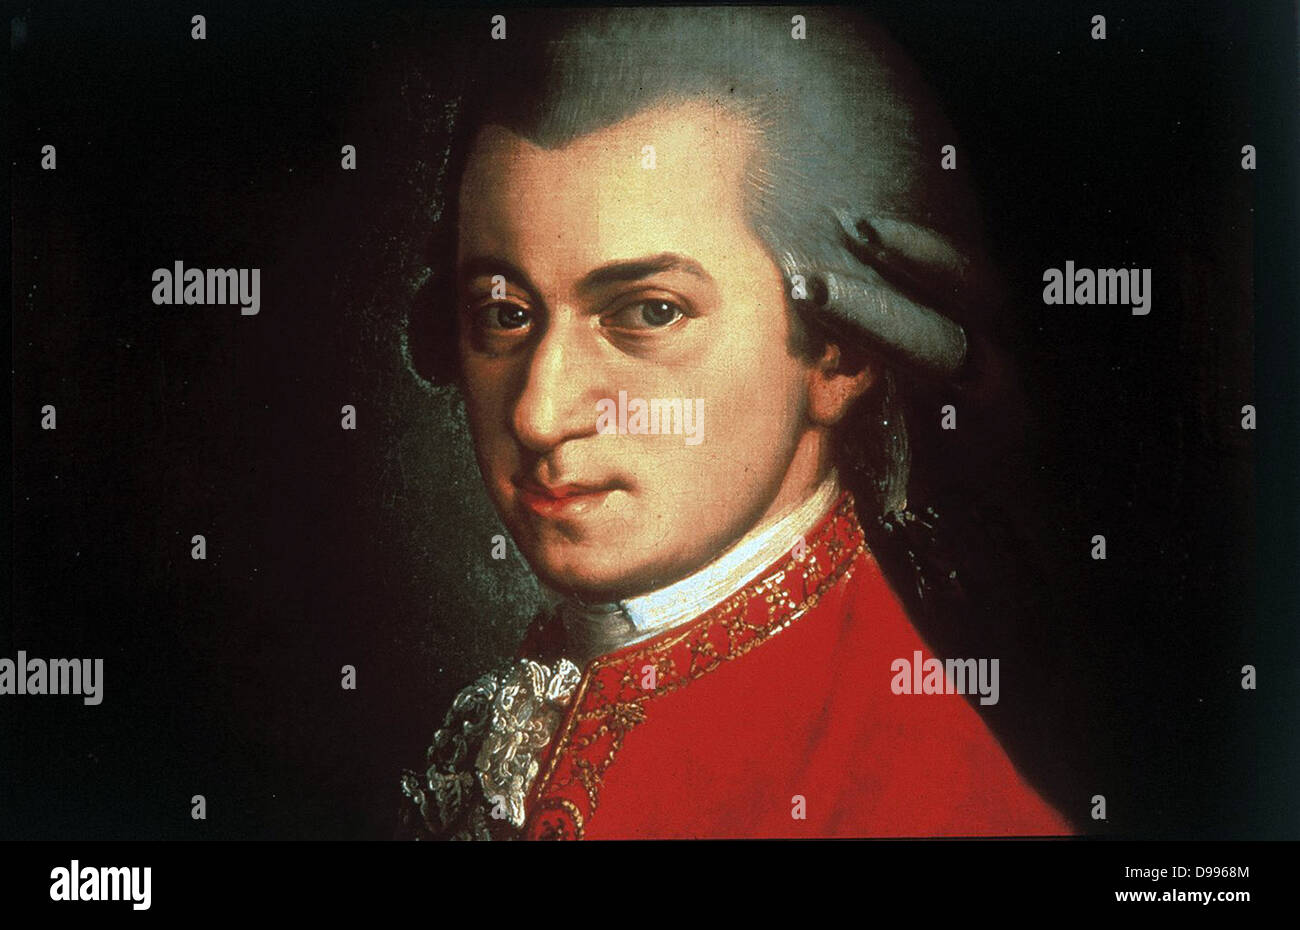 Porträt von Wolfgang Amadeus Mozart circa 1780 gemalt von Johann Nepomuk della Croce. Wolfgang Amadeus Mozart (27. Januar 1756 - vom 5. Dezember 1791), reichsten und einflussreichsten österreichischen Komponisten der klassischen Ära. Stockfoto